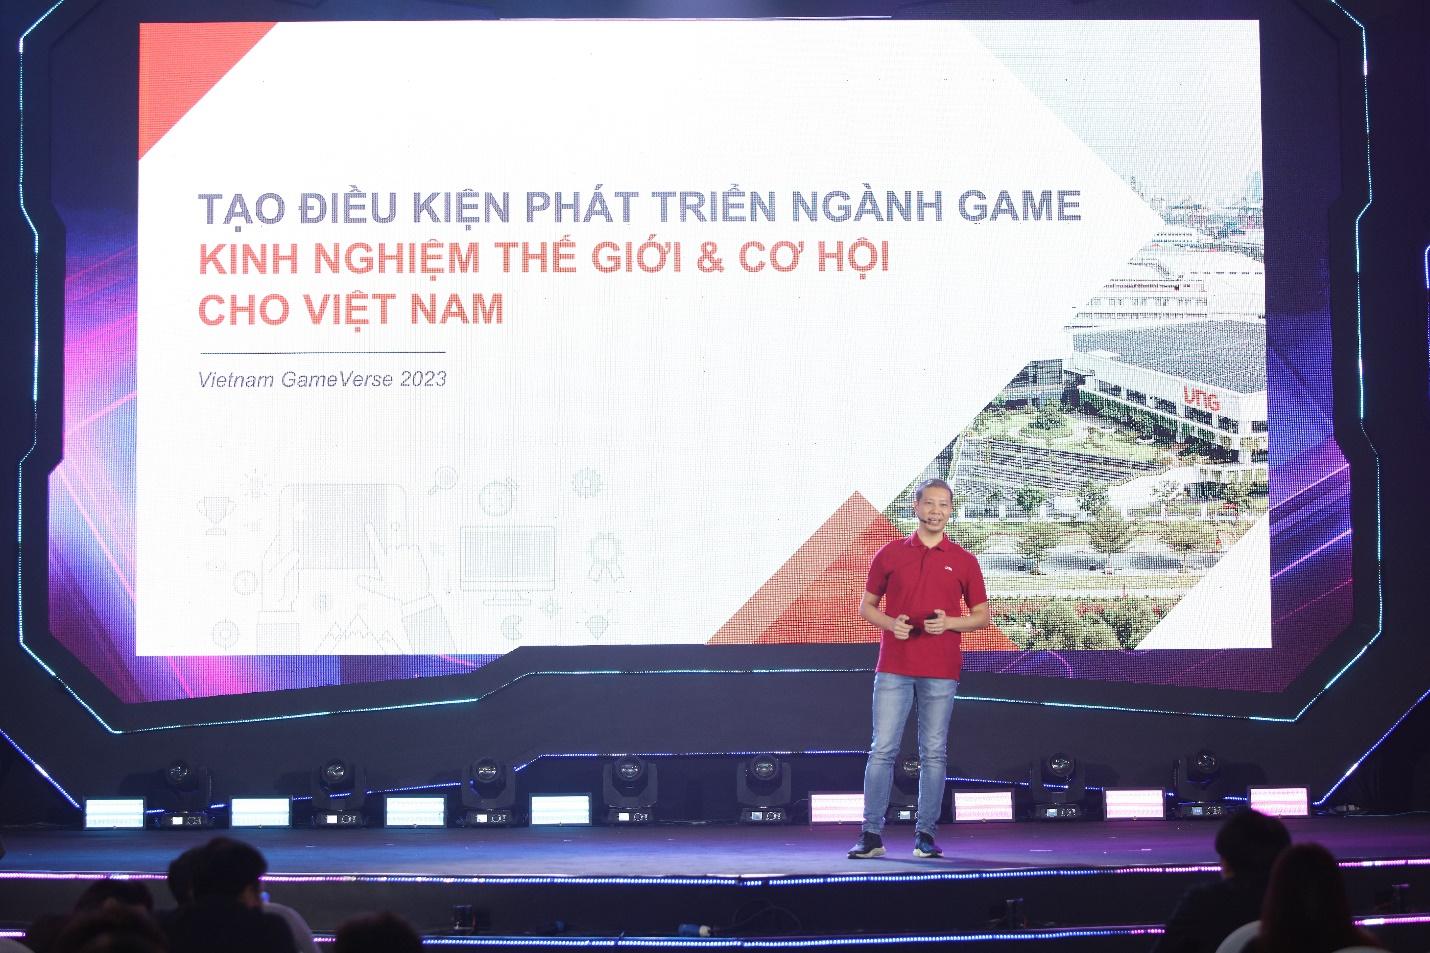 VNG cam kết xây dựng cộng đồng và phát triển ngành game Việt, định hướng vươn tầm quốc tế - Ảnh 2.